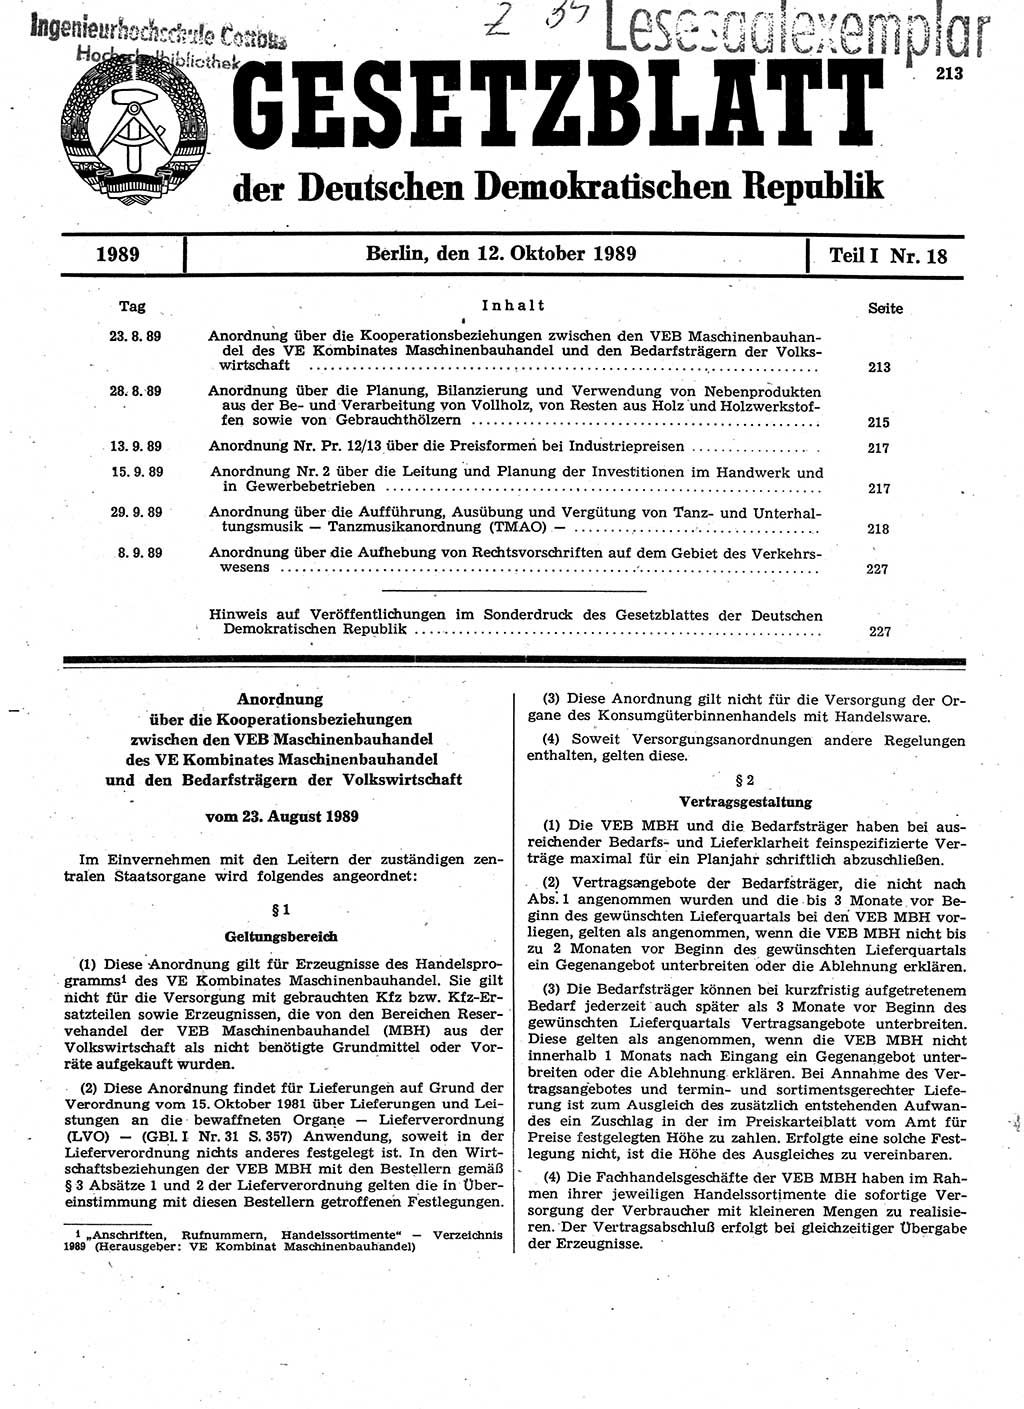 Gesetzblatt (GBl.) der Deutschen Demokratischen Republik (DDR) Teil Ⅰ 1989, Seite 213 (GBl. DDR Ⅰ 1989, S. 213)